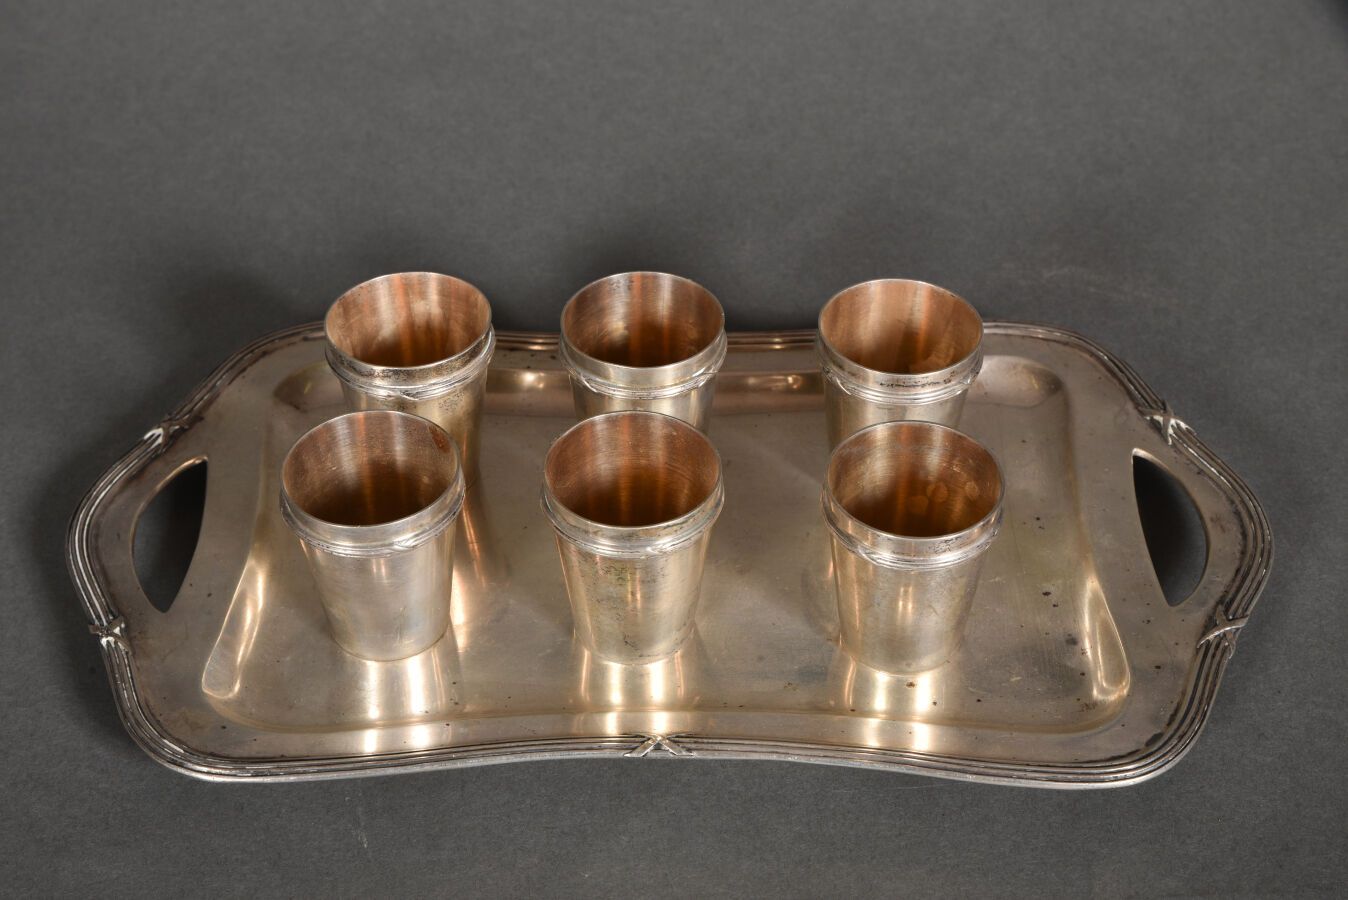 Null 银制酒具包括一个有丝带边缘的托盘和六个高脚杯。

外国印记 "800"，有天鹅图案。

约1900年。

重量：351克。